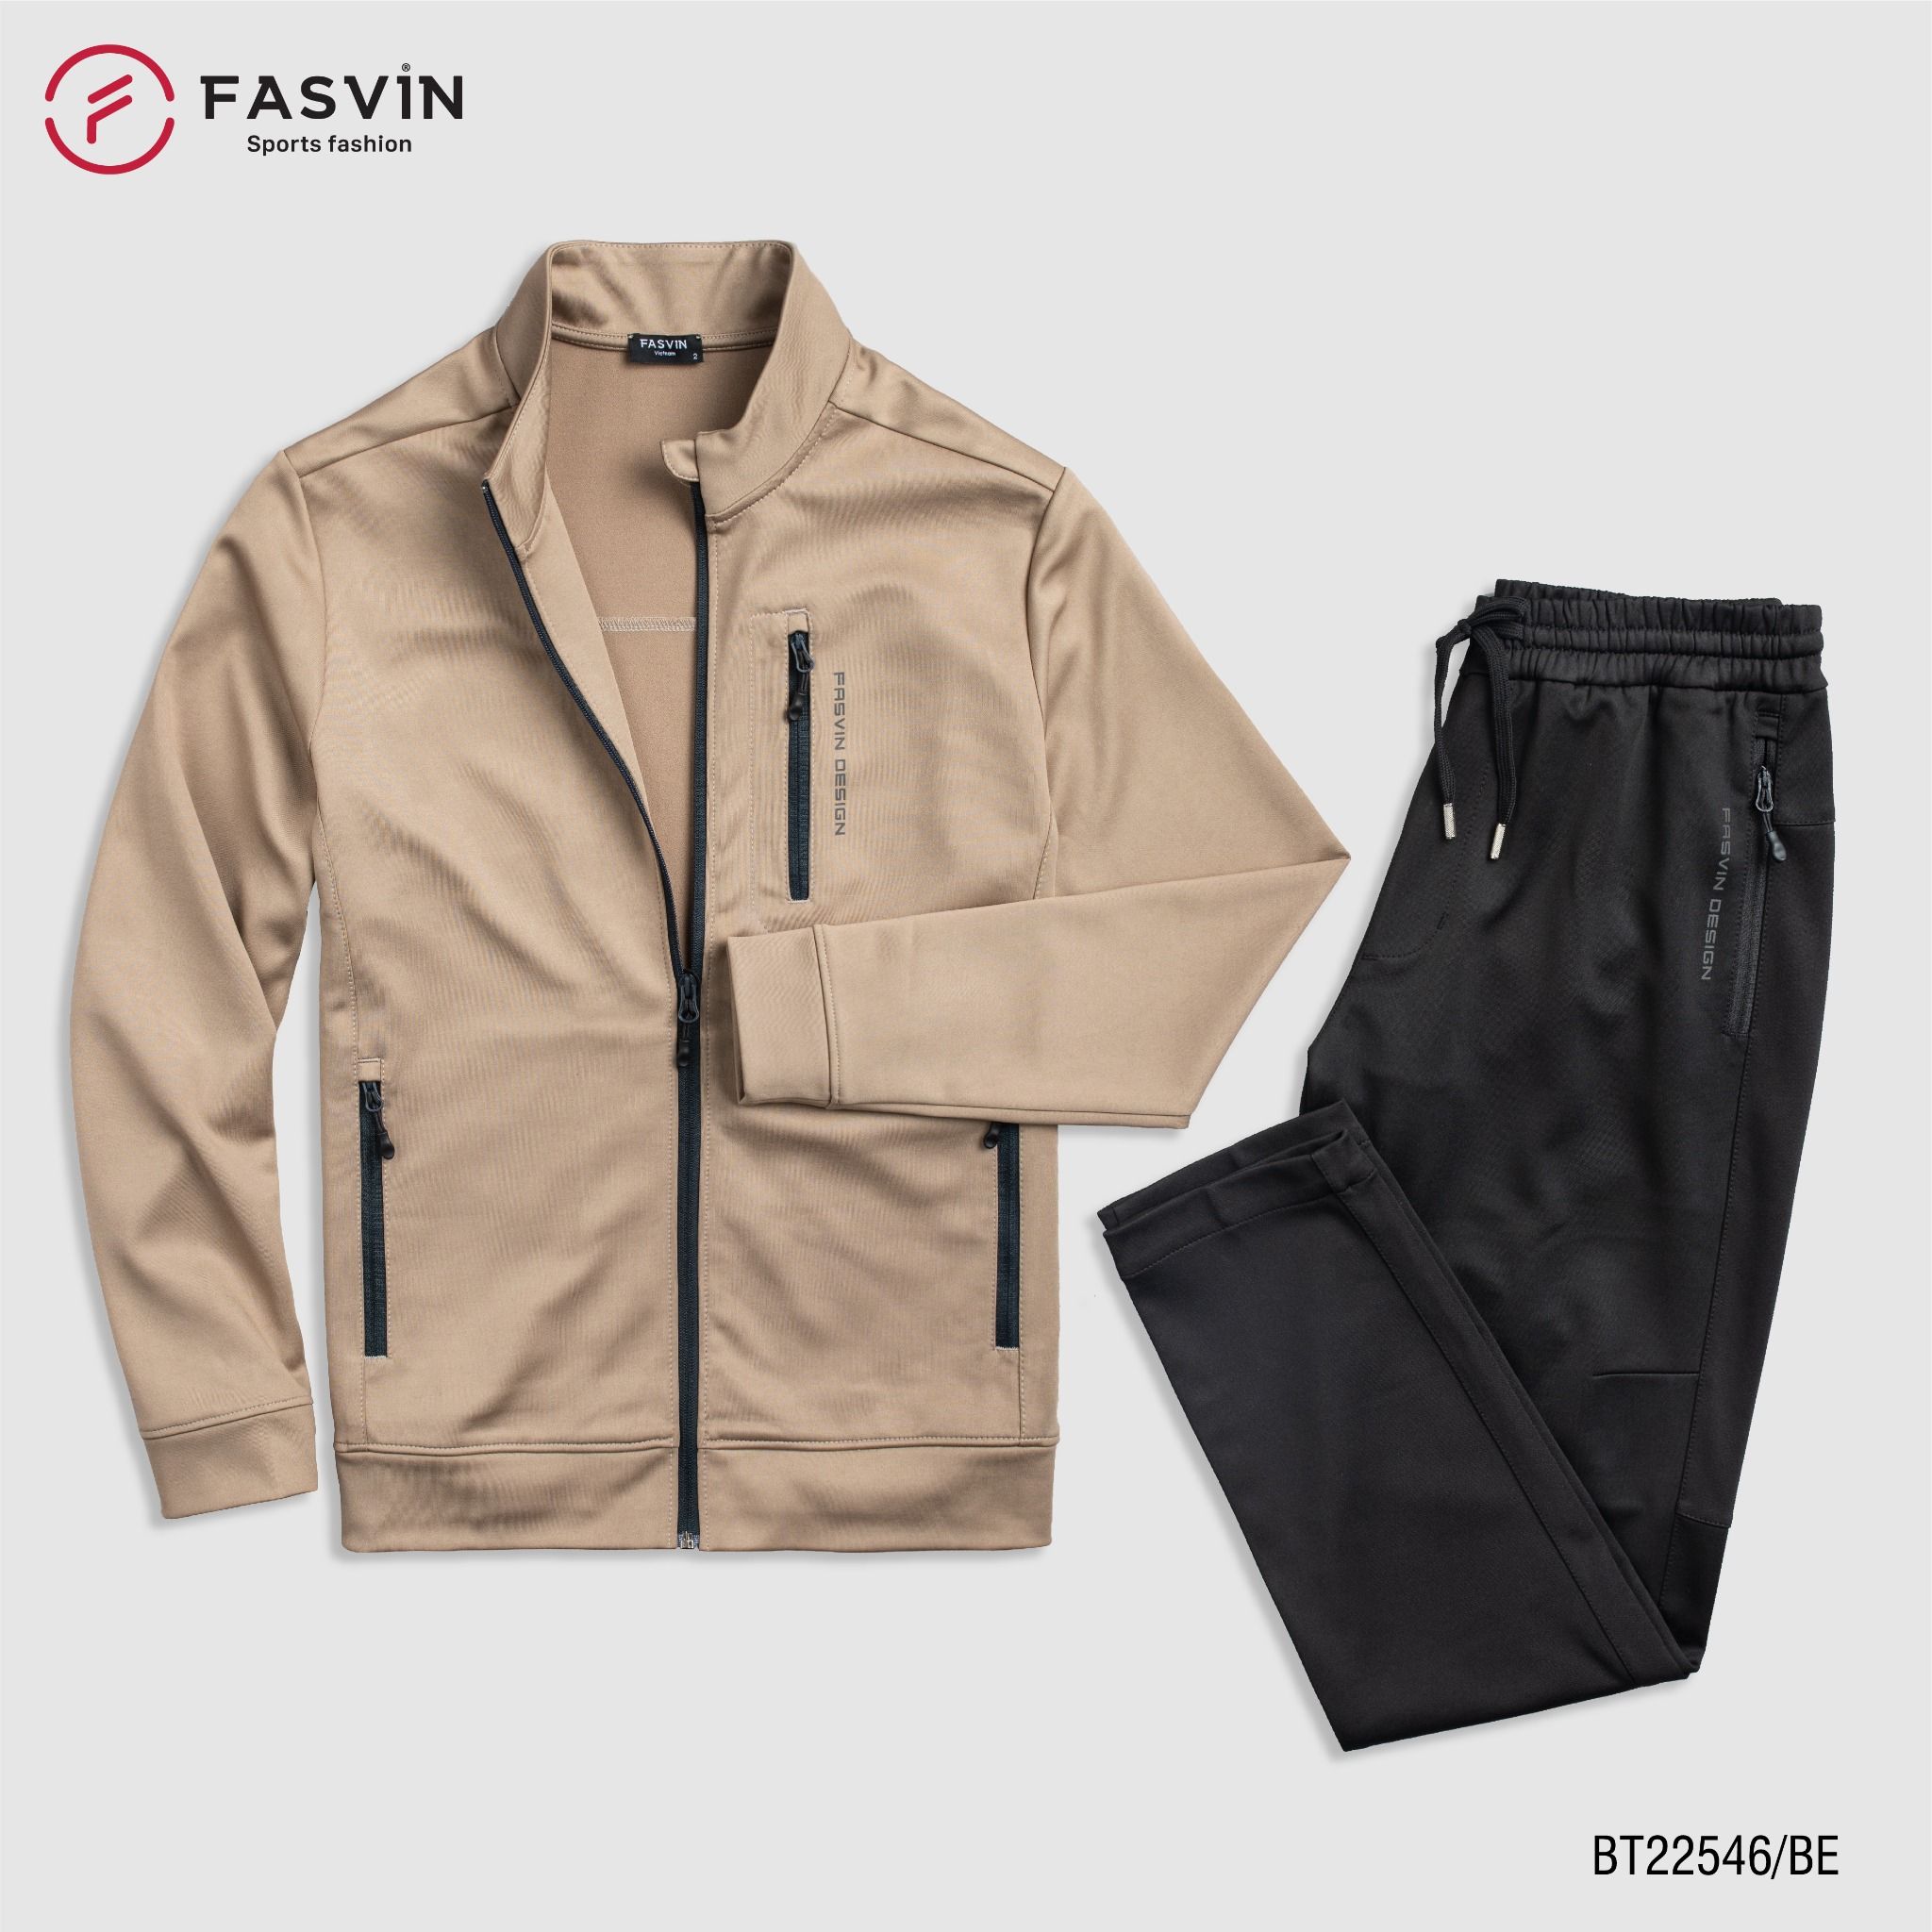  Bộ quần áo thể thao nam Fasvin vải thun 01 lớp co giãn thoải mái BT22546 